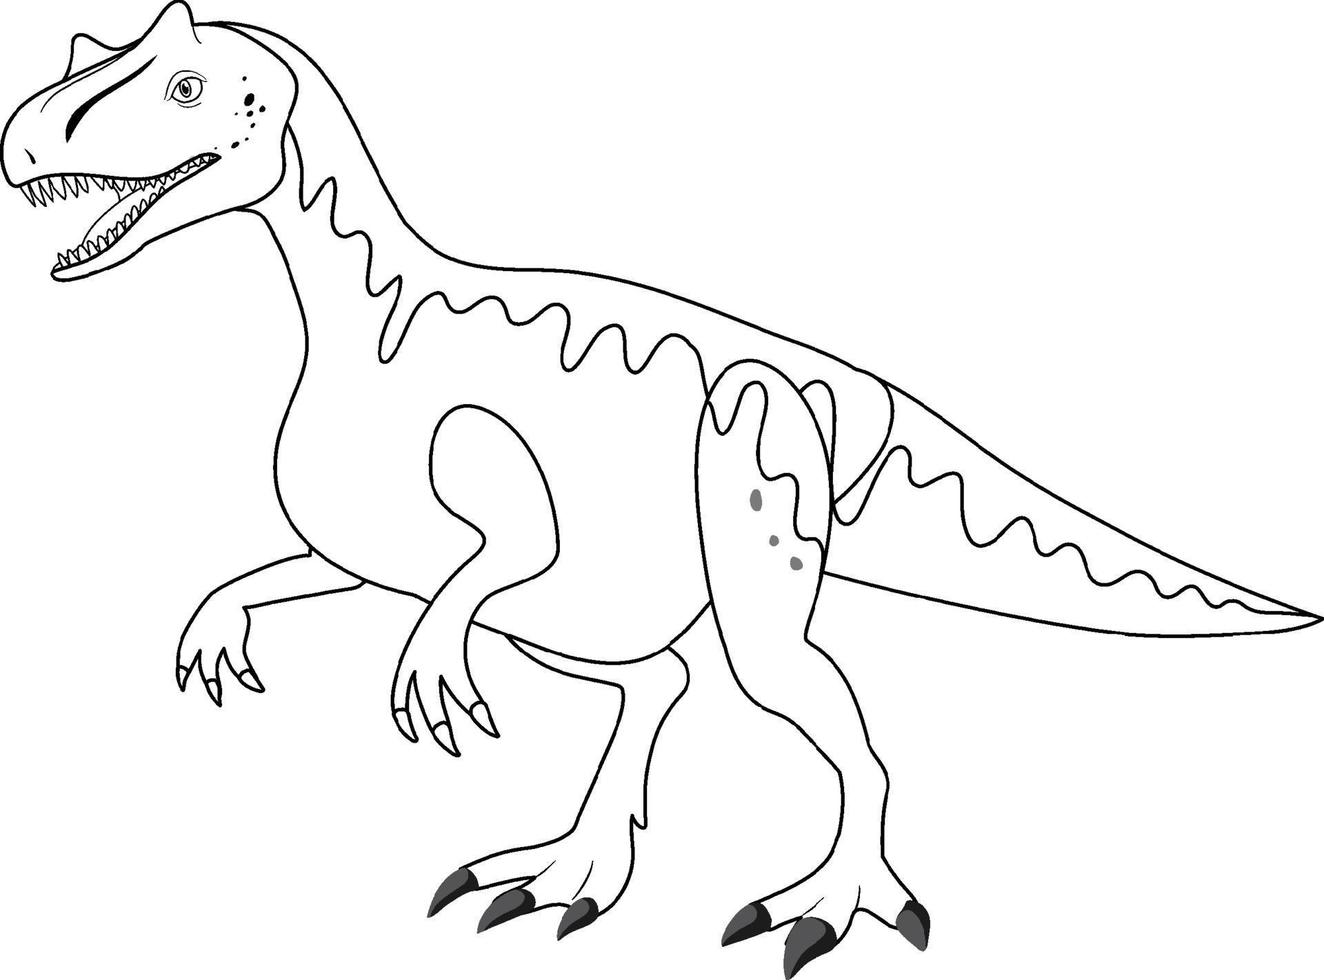 allosaurus dinosaurus doodle schets op witte achtergrond vector